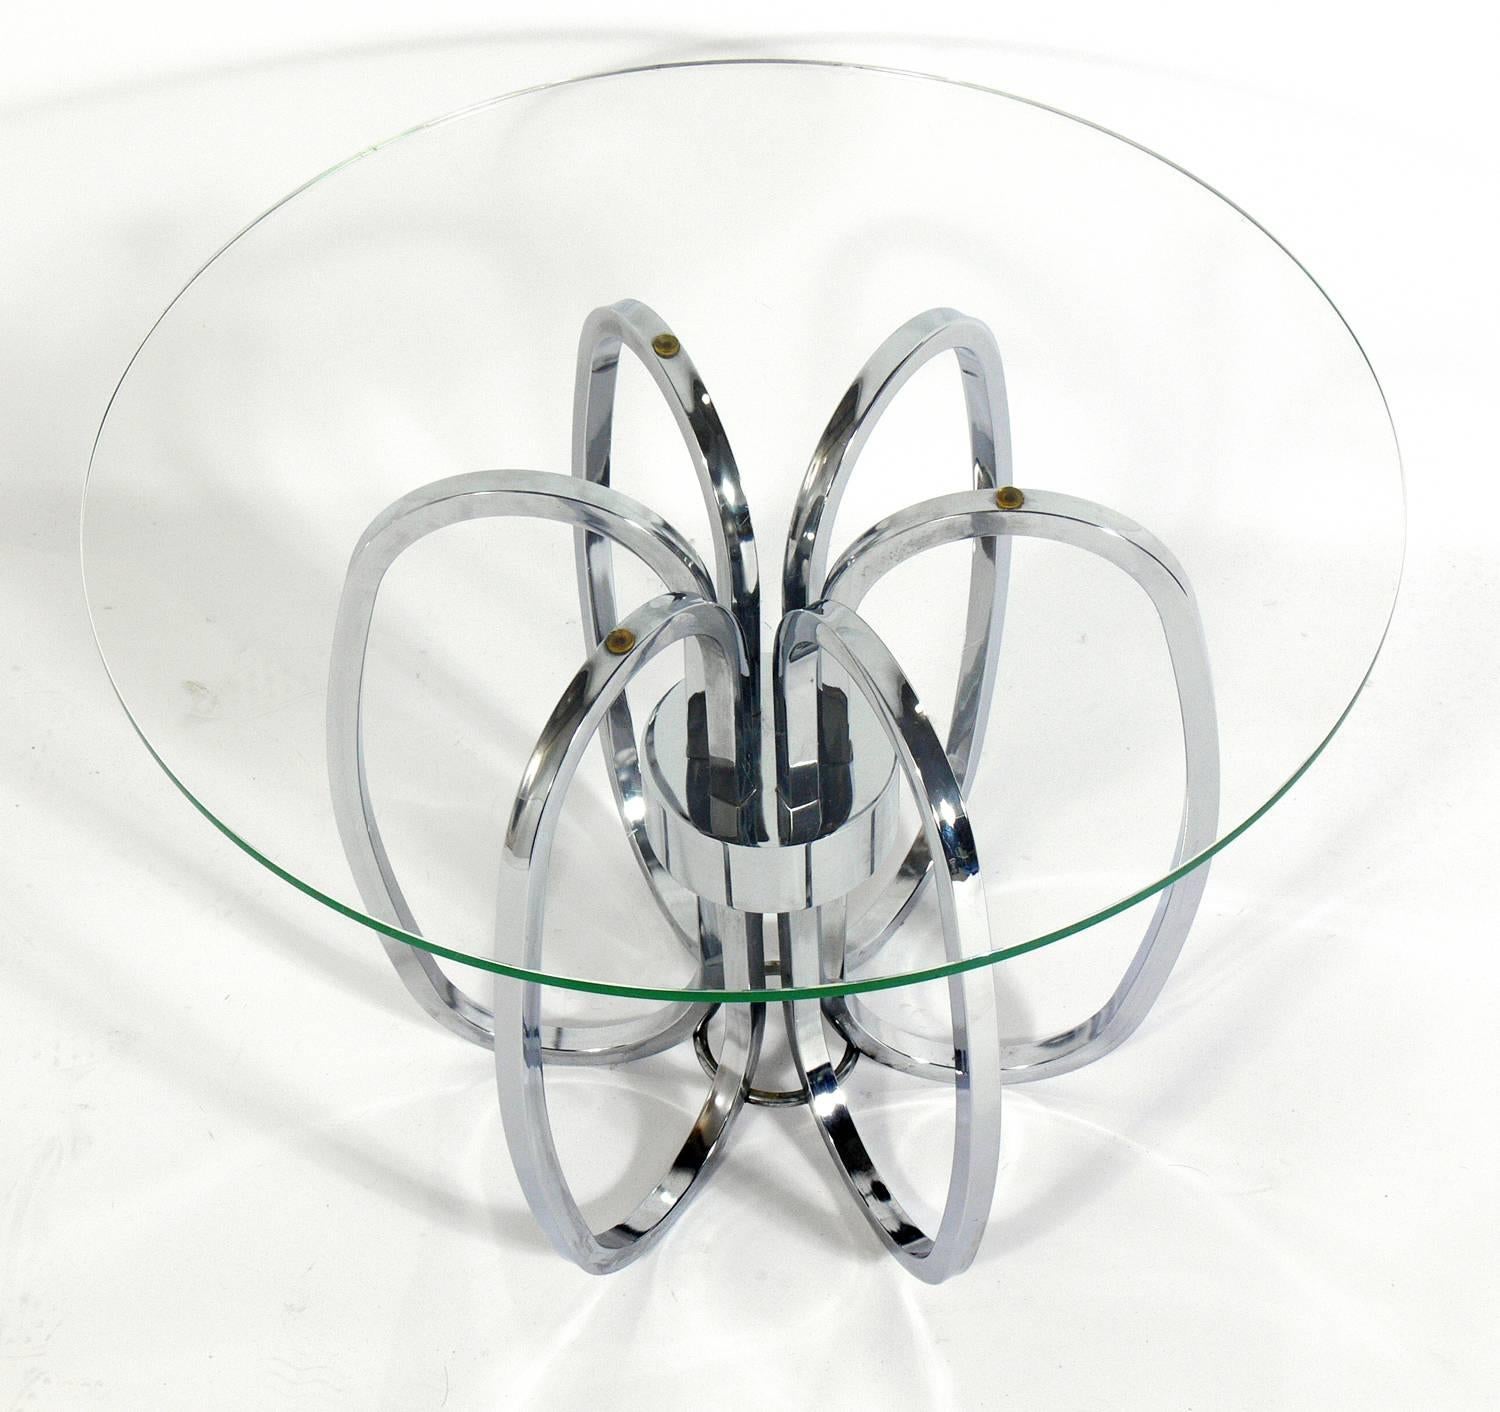 Paire de tables d'appoint sculpturales en métal chromé, à la manière de Milo Baughman, américain, vers les années 1960. Elles sont d'une taille polyvalente et peuvent être utilisées comme tables d'extrémité ou d'appoint, ou comme tables de nuit.